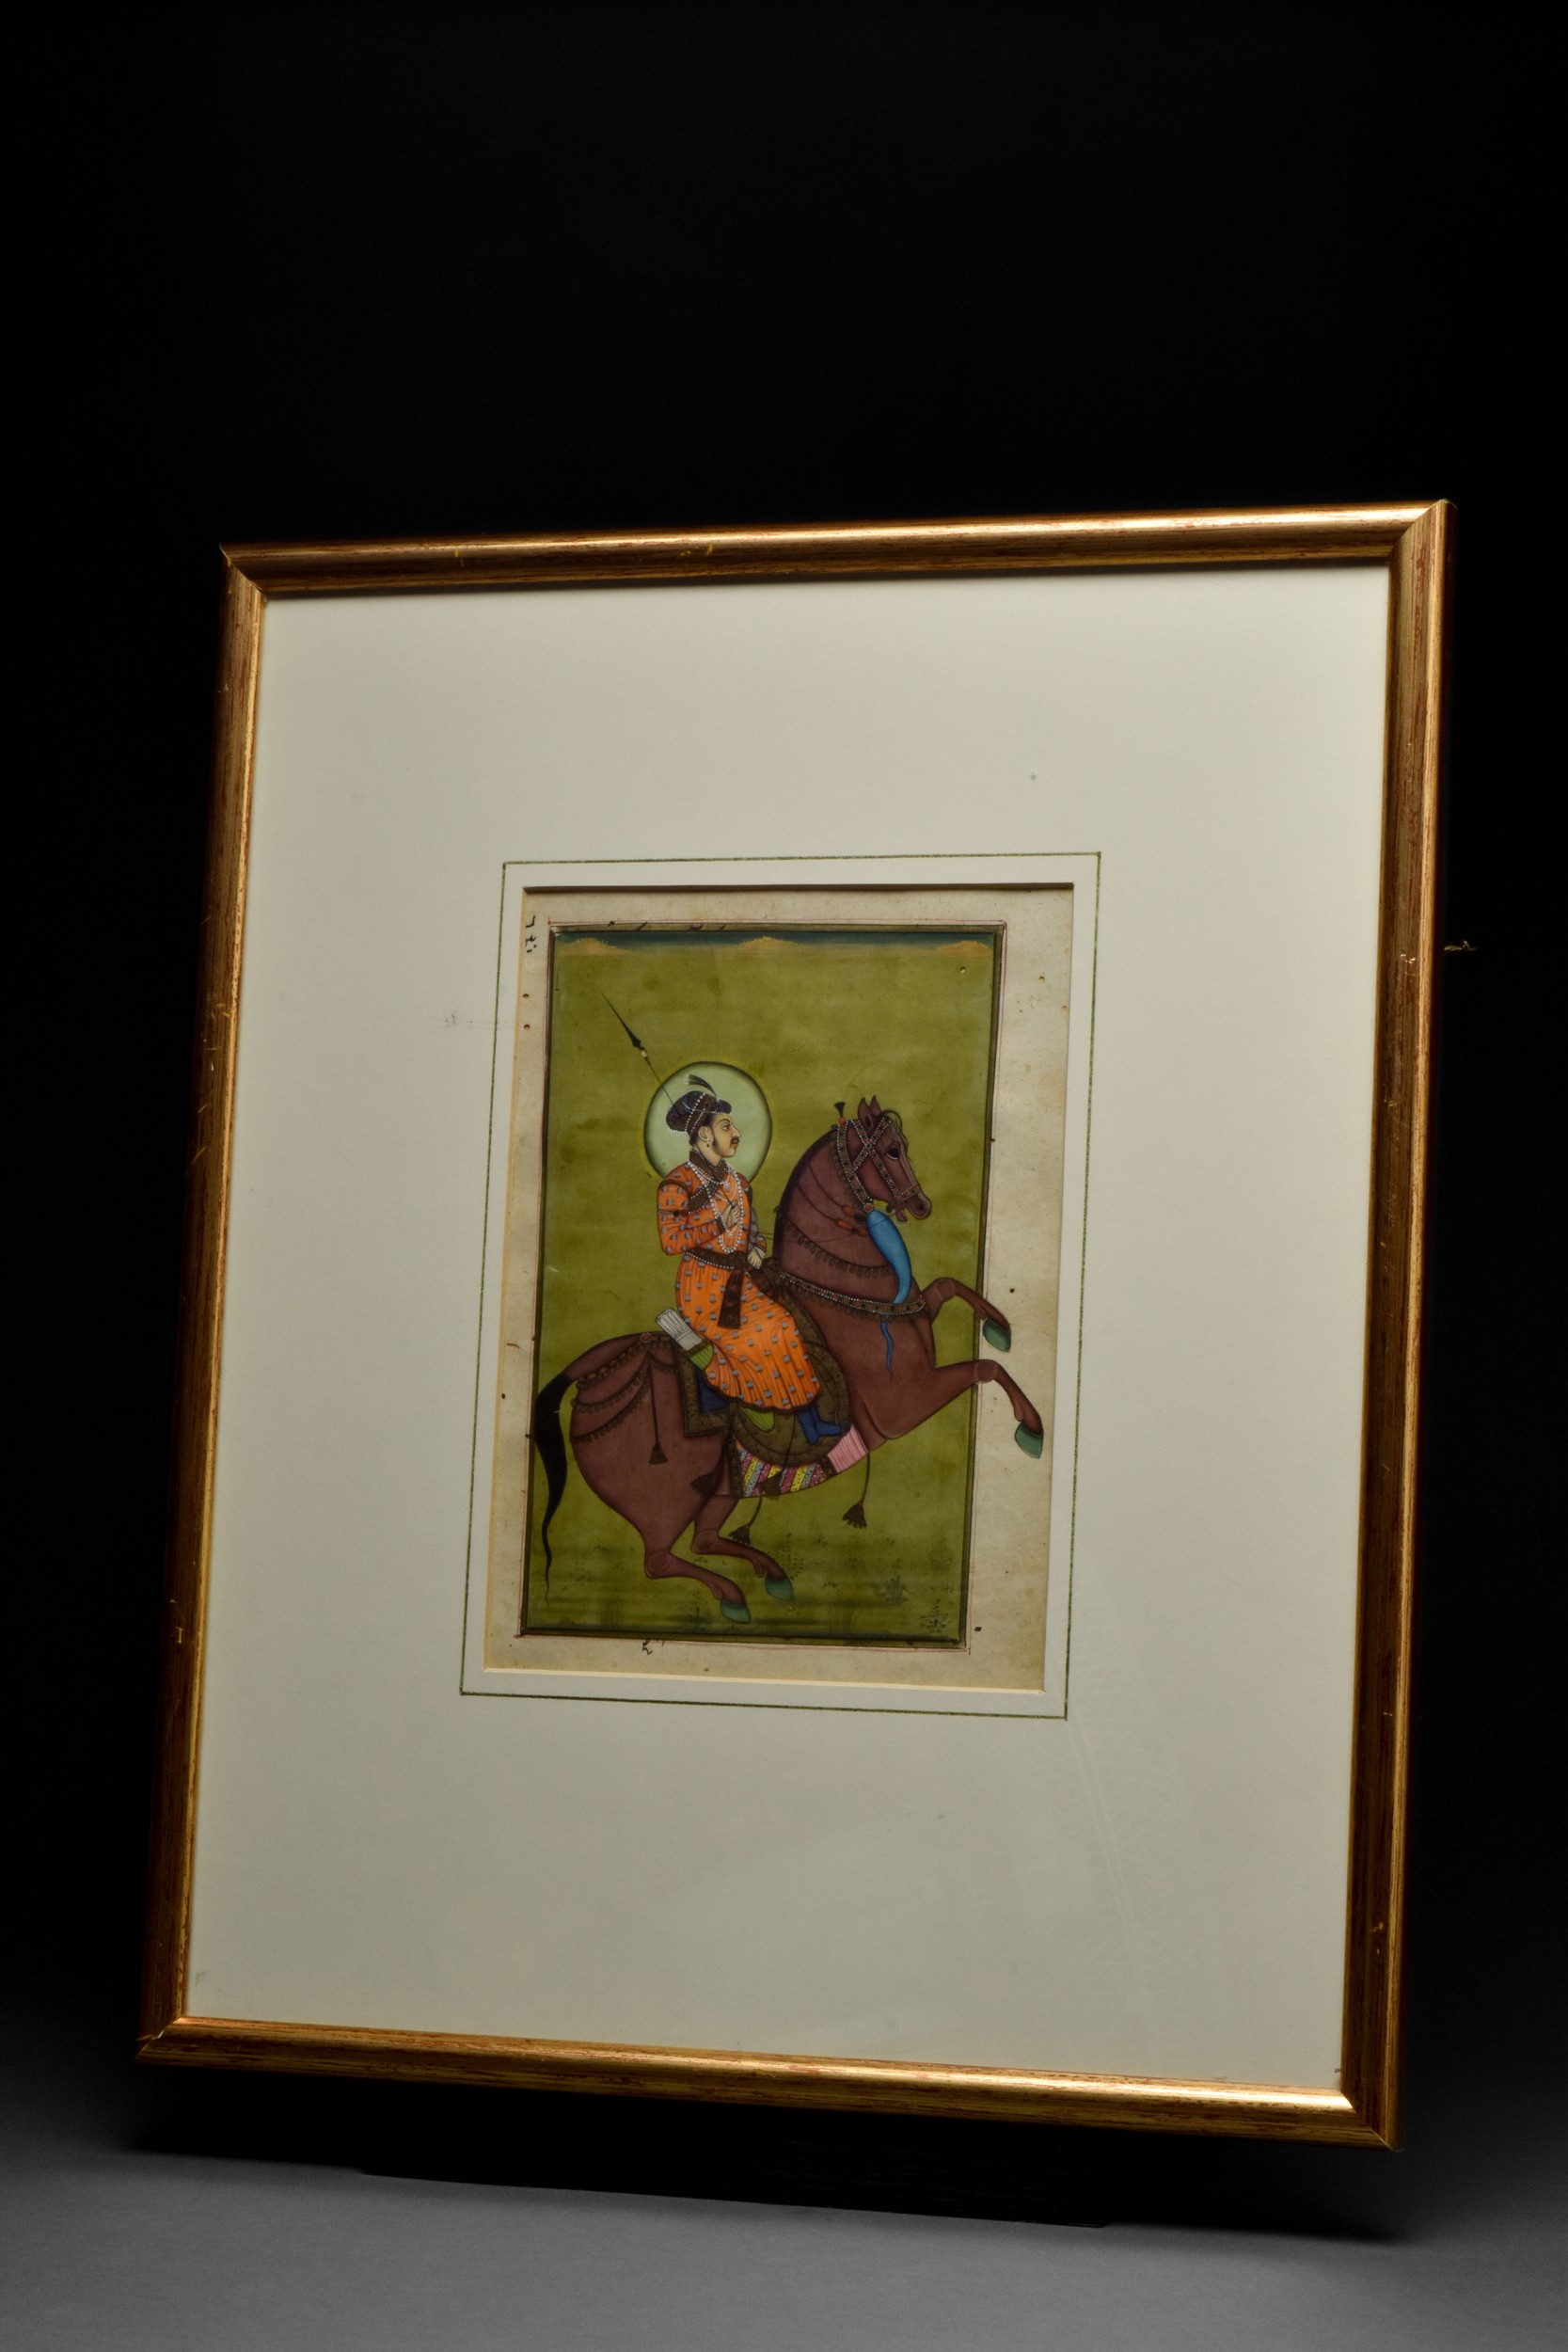 PORTRAIT OF A MUGHAL RULER ON HORSEBACK - Image 2 of 5